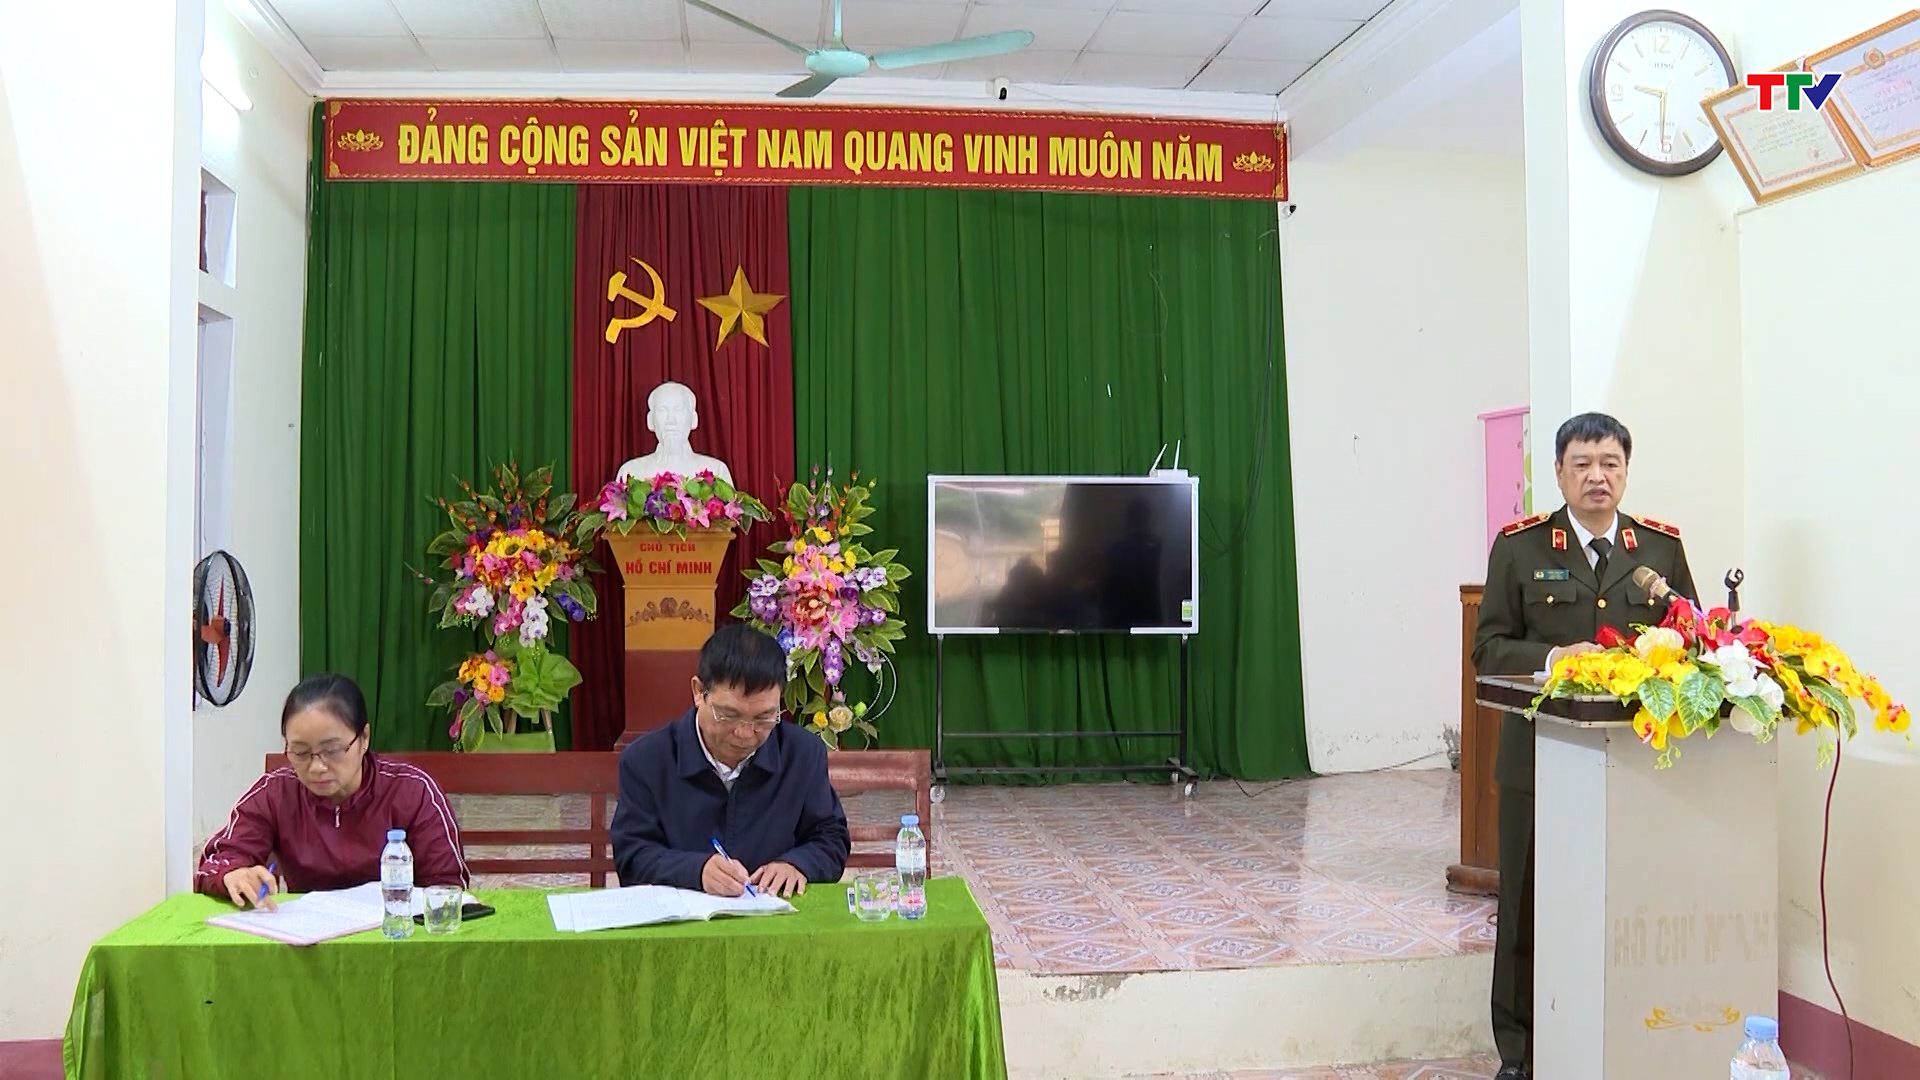 Giám đốc Công an tỉnh dự sinh hoạt chi bộ phố Lê Hoàn,
thị trấn Ngọc Lặc - Ảnh 2.